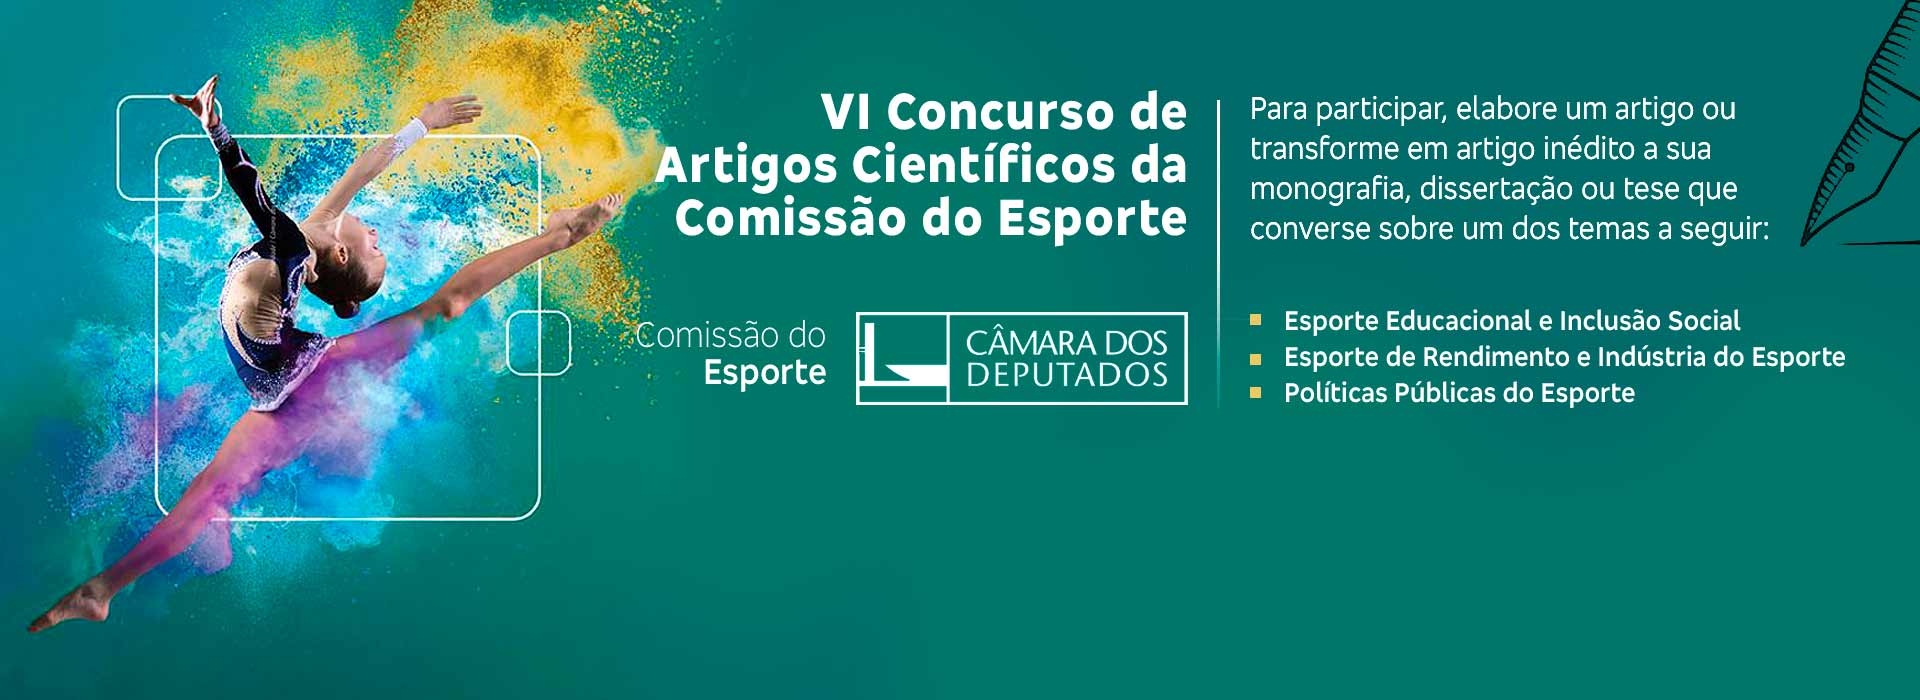 Comissão de Esporte da Câmara dos Deputados promove o VI Concurso de Artigos Científicos da Comissão do Esporte